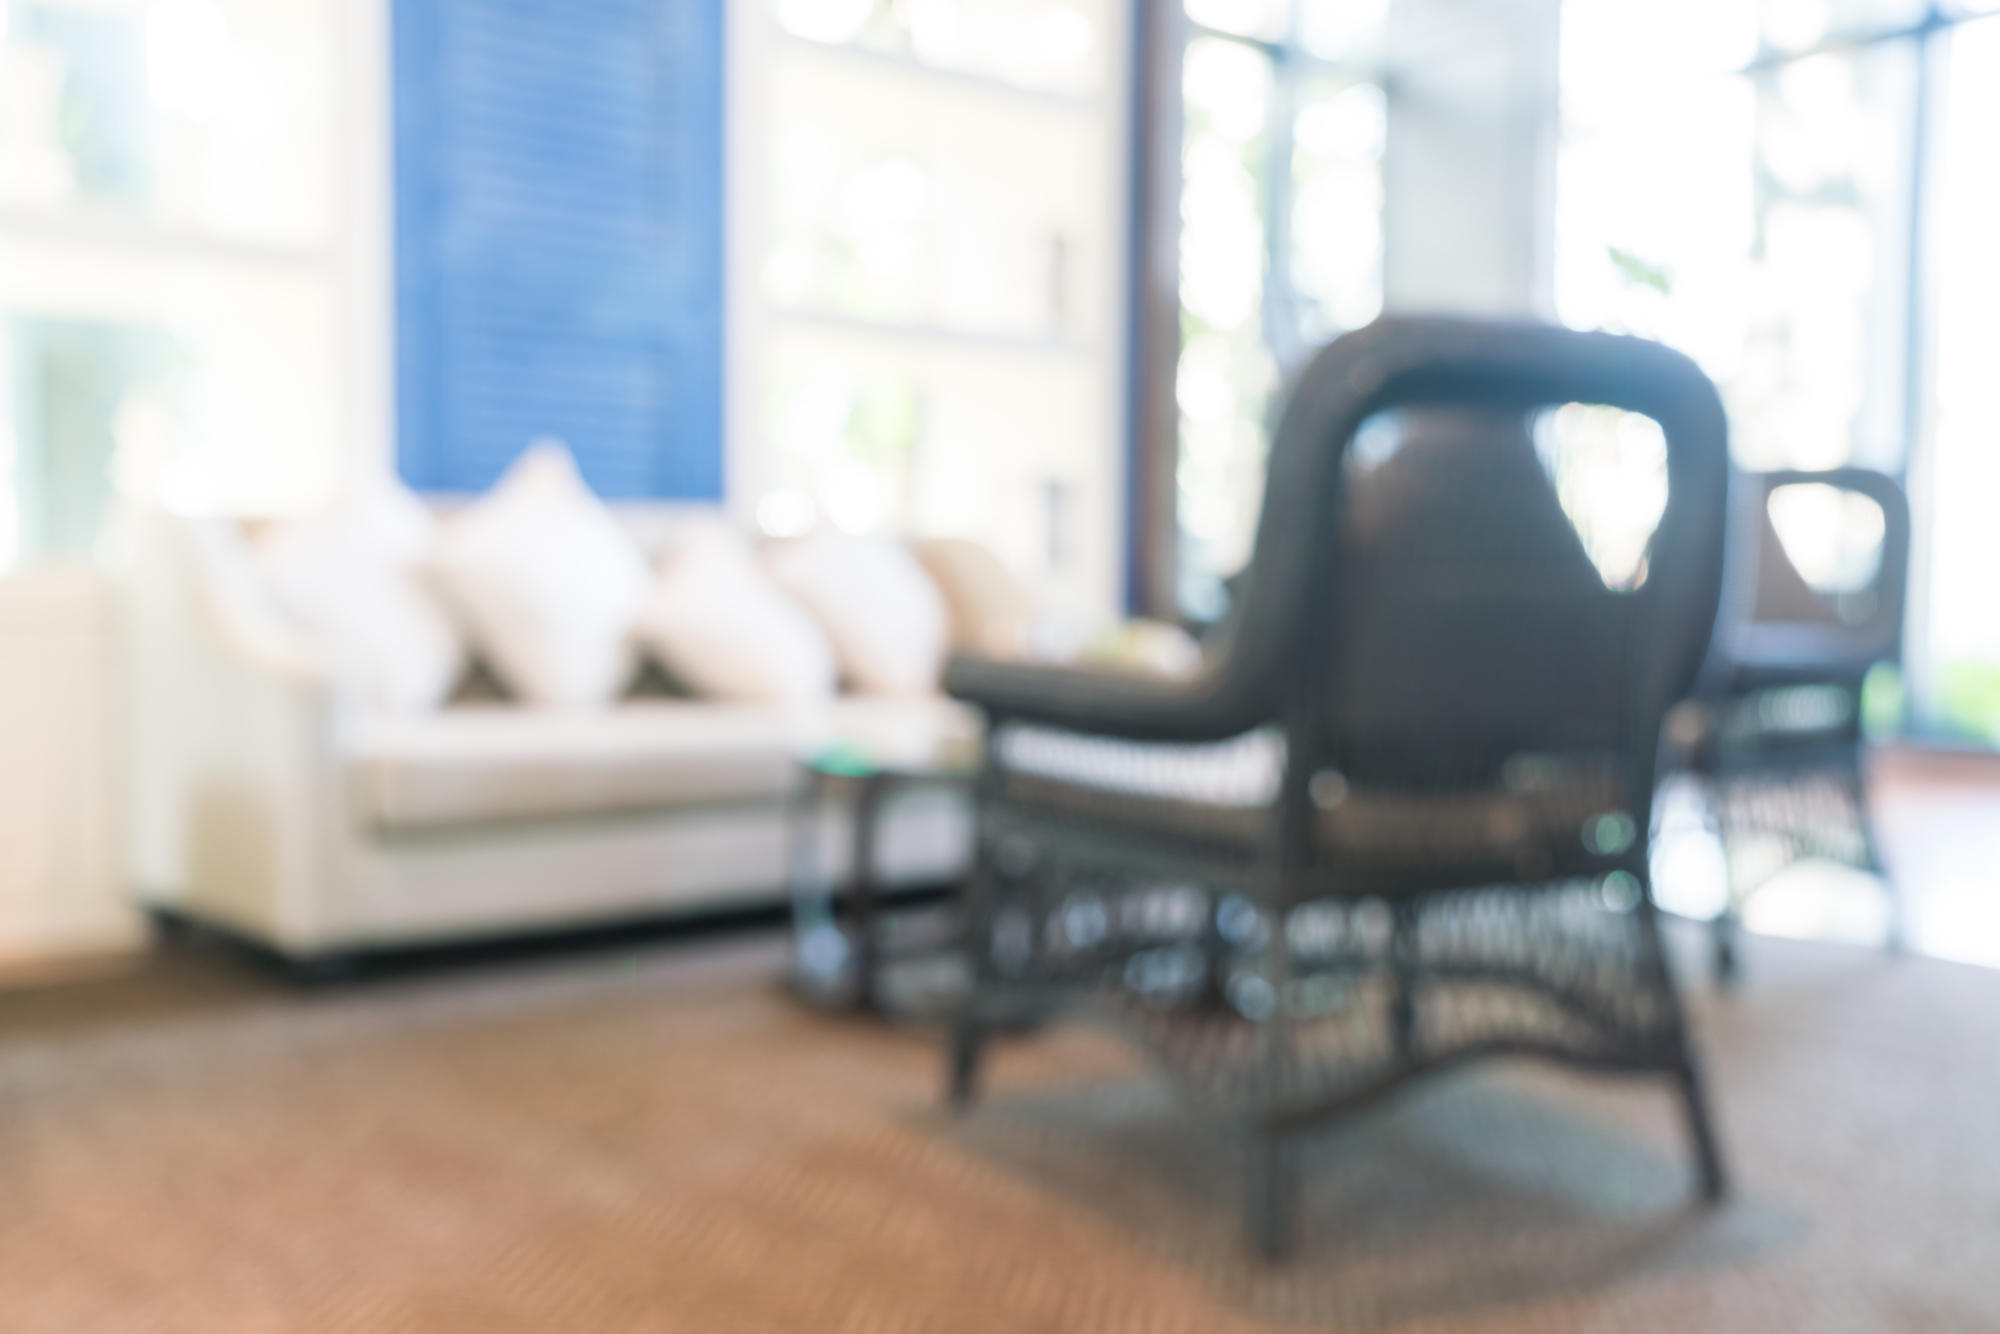 Blur luxury hotel lobby interior background